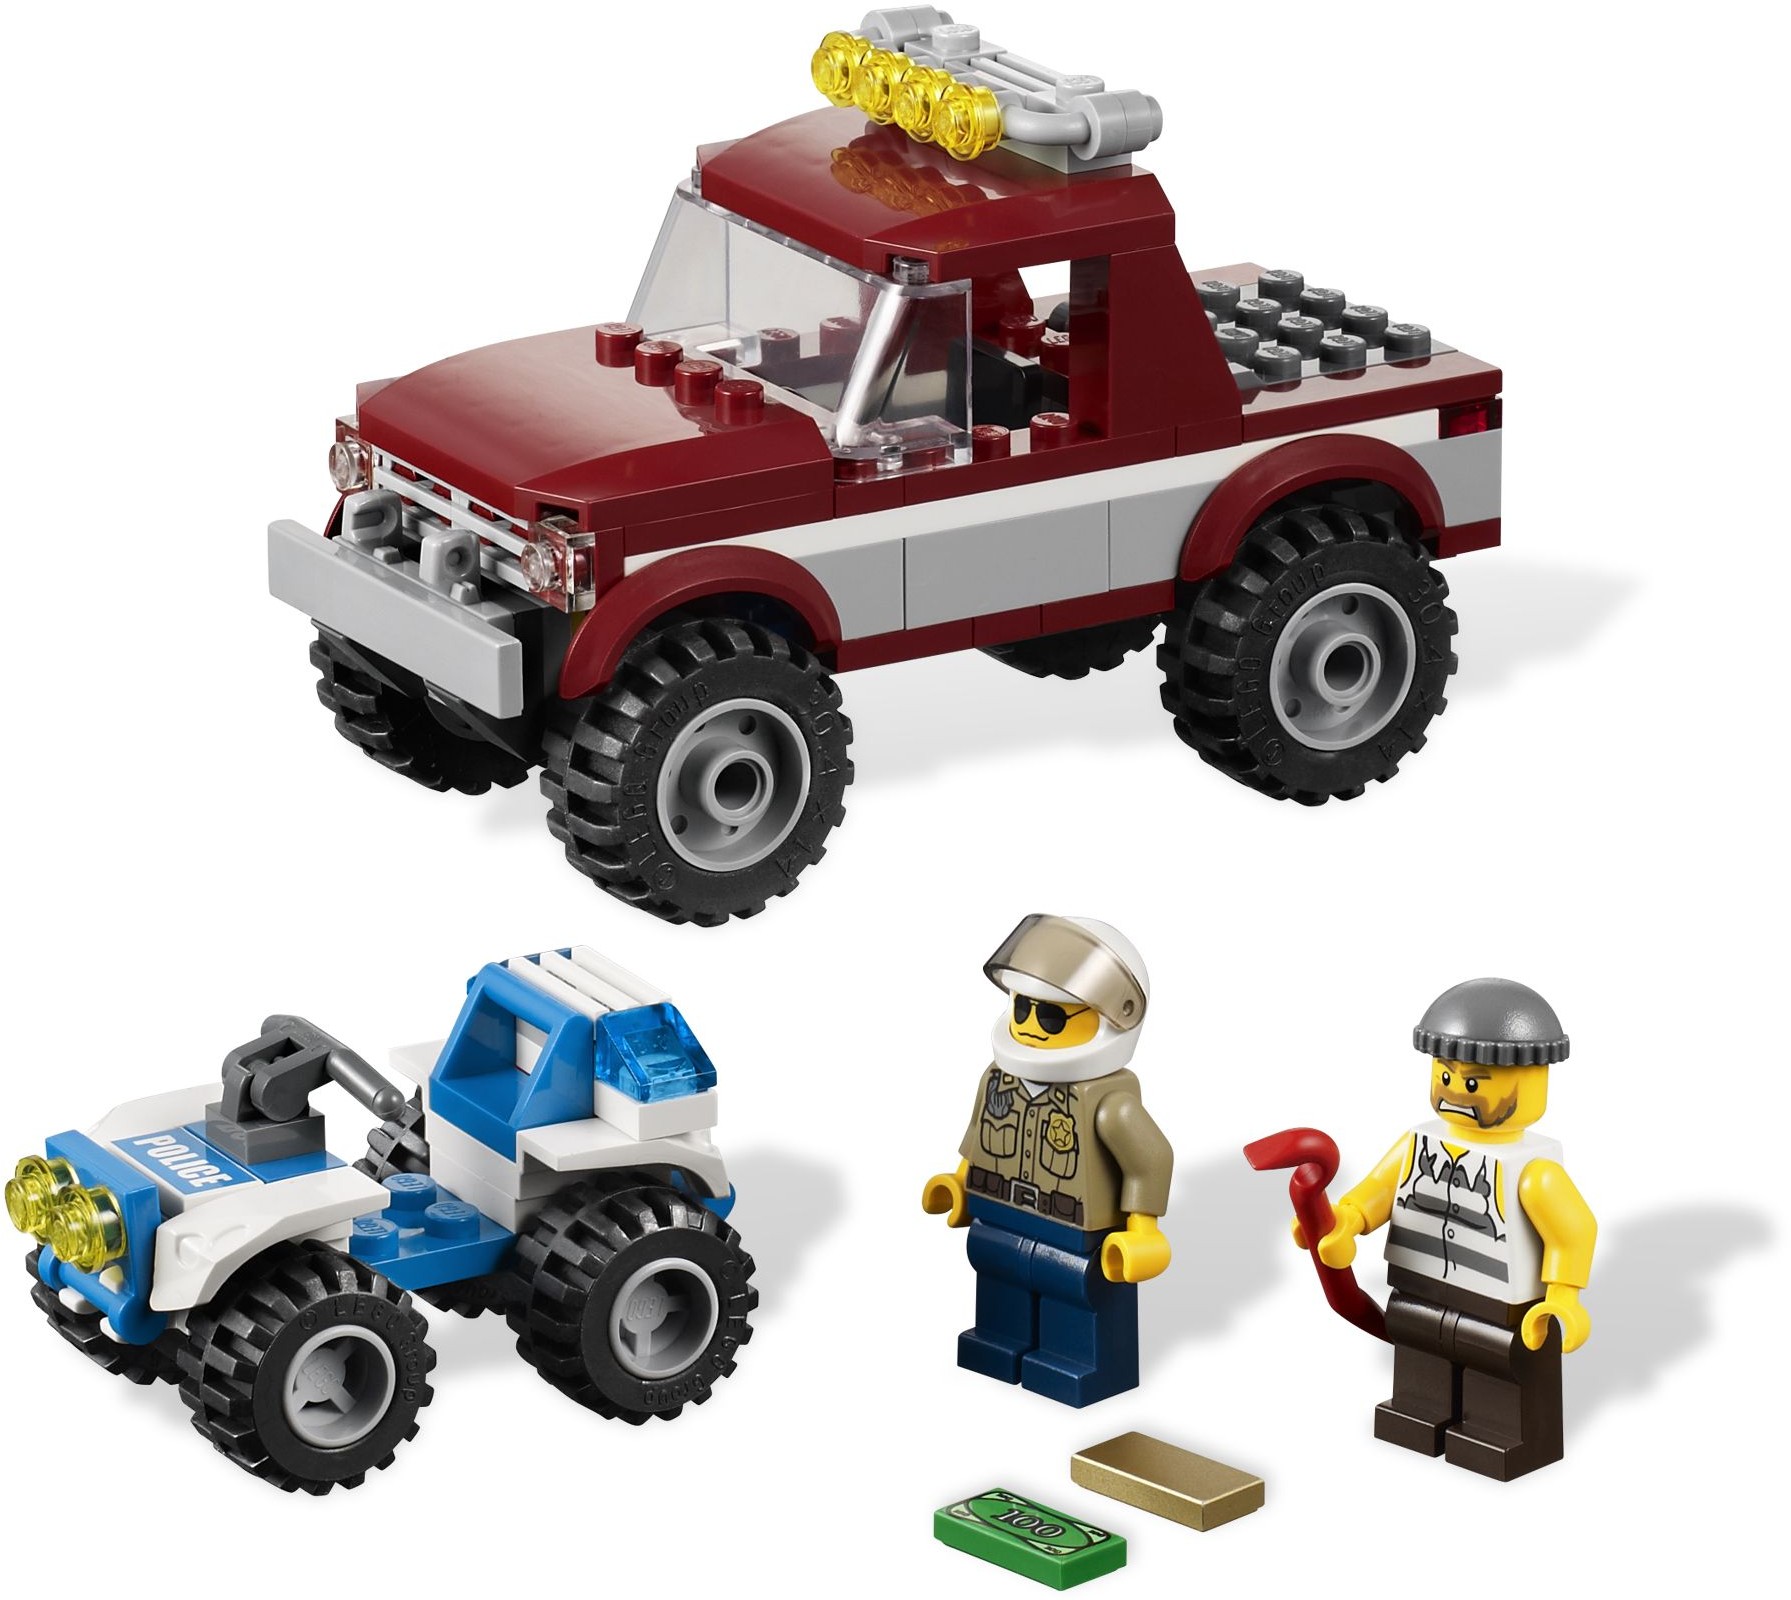 lige sammentrækning udløb LEGO City Forest Police | Brickset